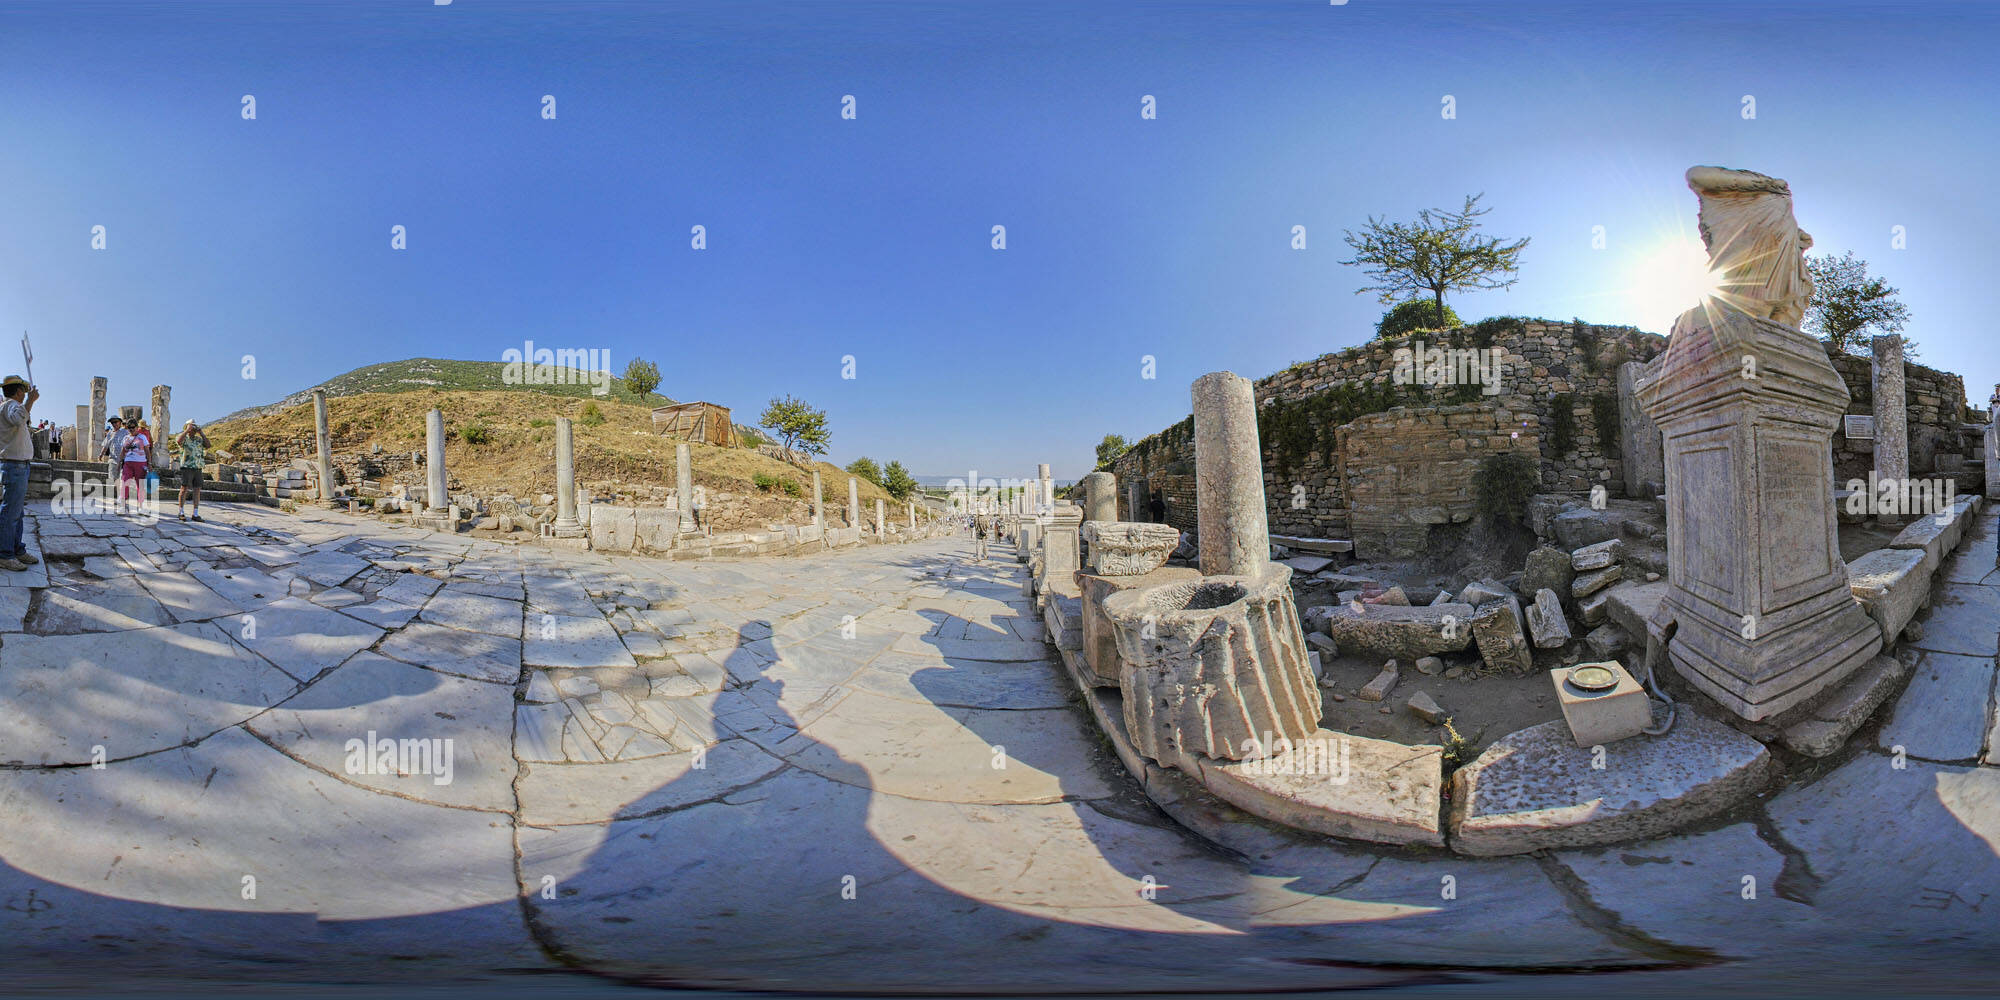 Visualizzazione panoramica a 360 gradi di Ephesus